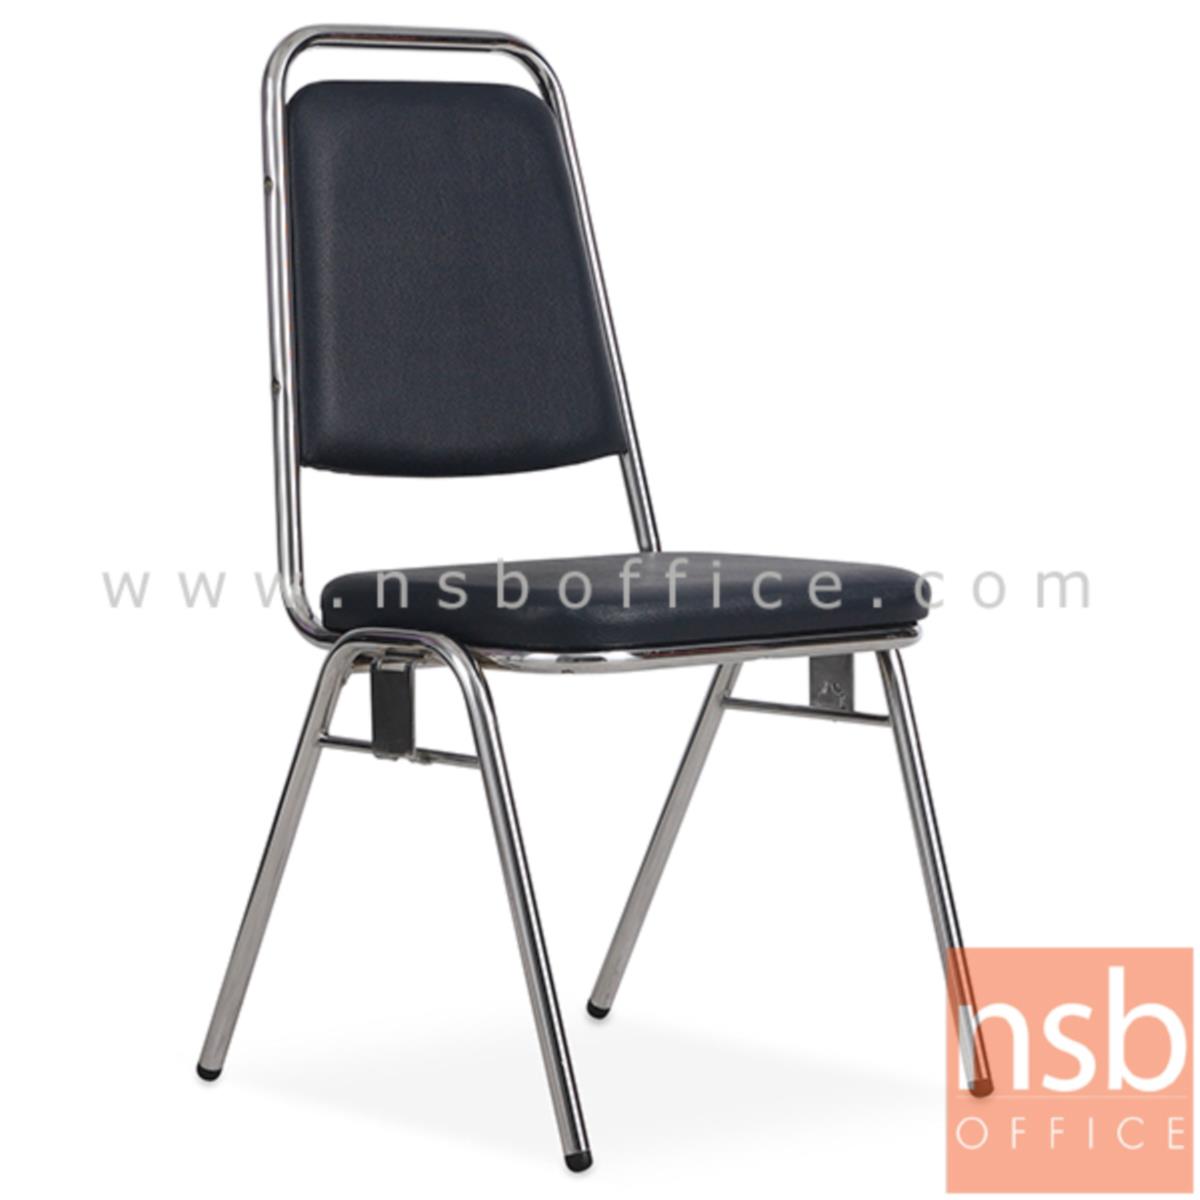 B05A079:เก้าอี้อเนกประสงค์จัดเลี้ยง รุ่น TY-701ACC  ขาเหล็กชุบโครเมี่ยม